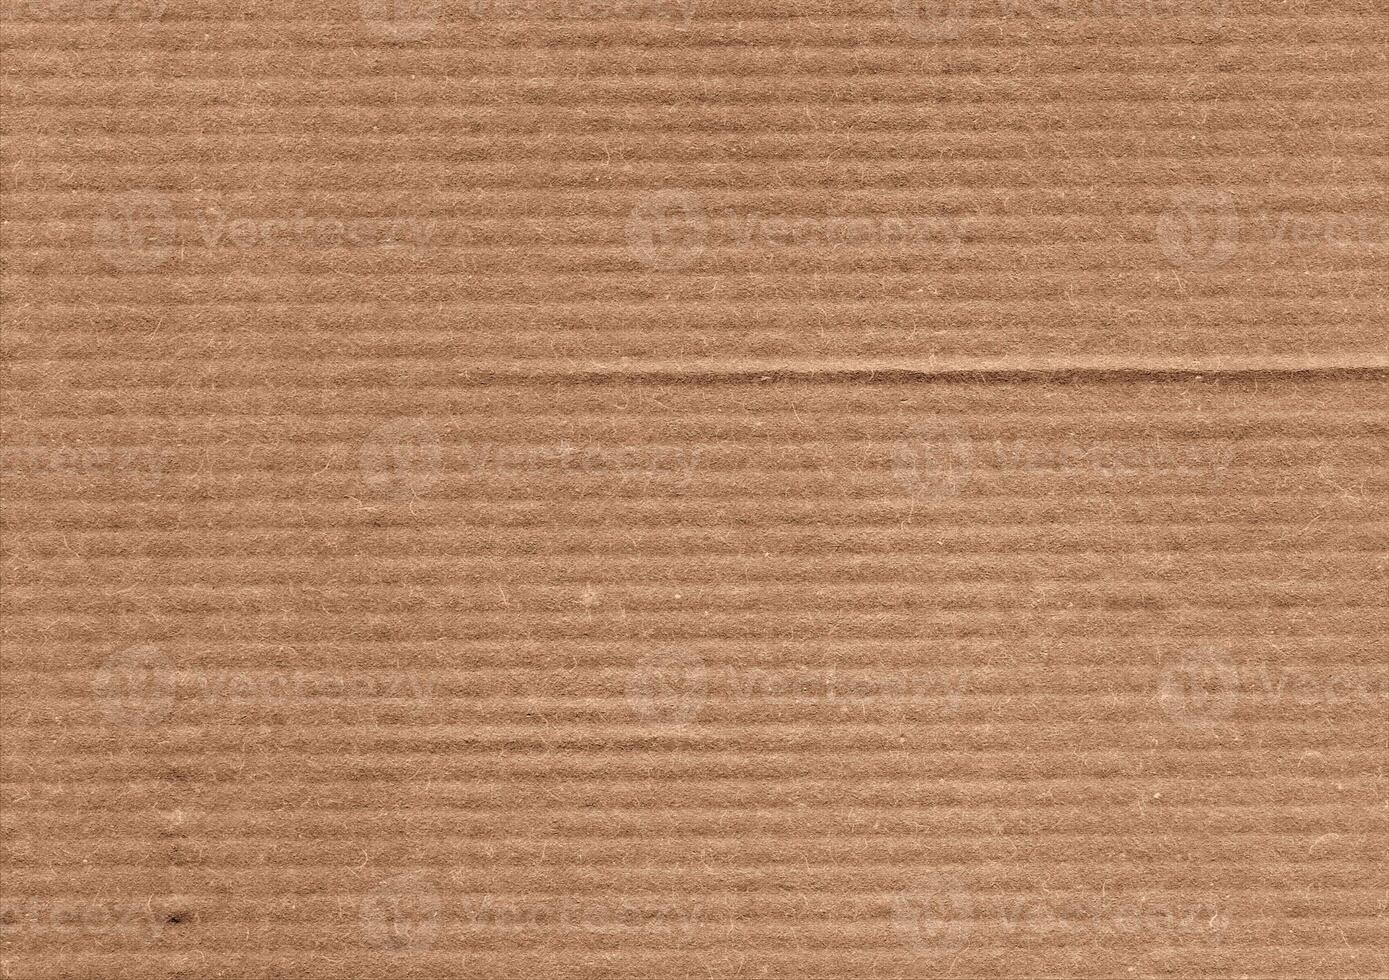 braun Kraft Papier Textur Hintergrund foto